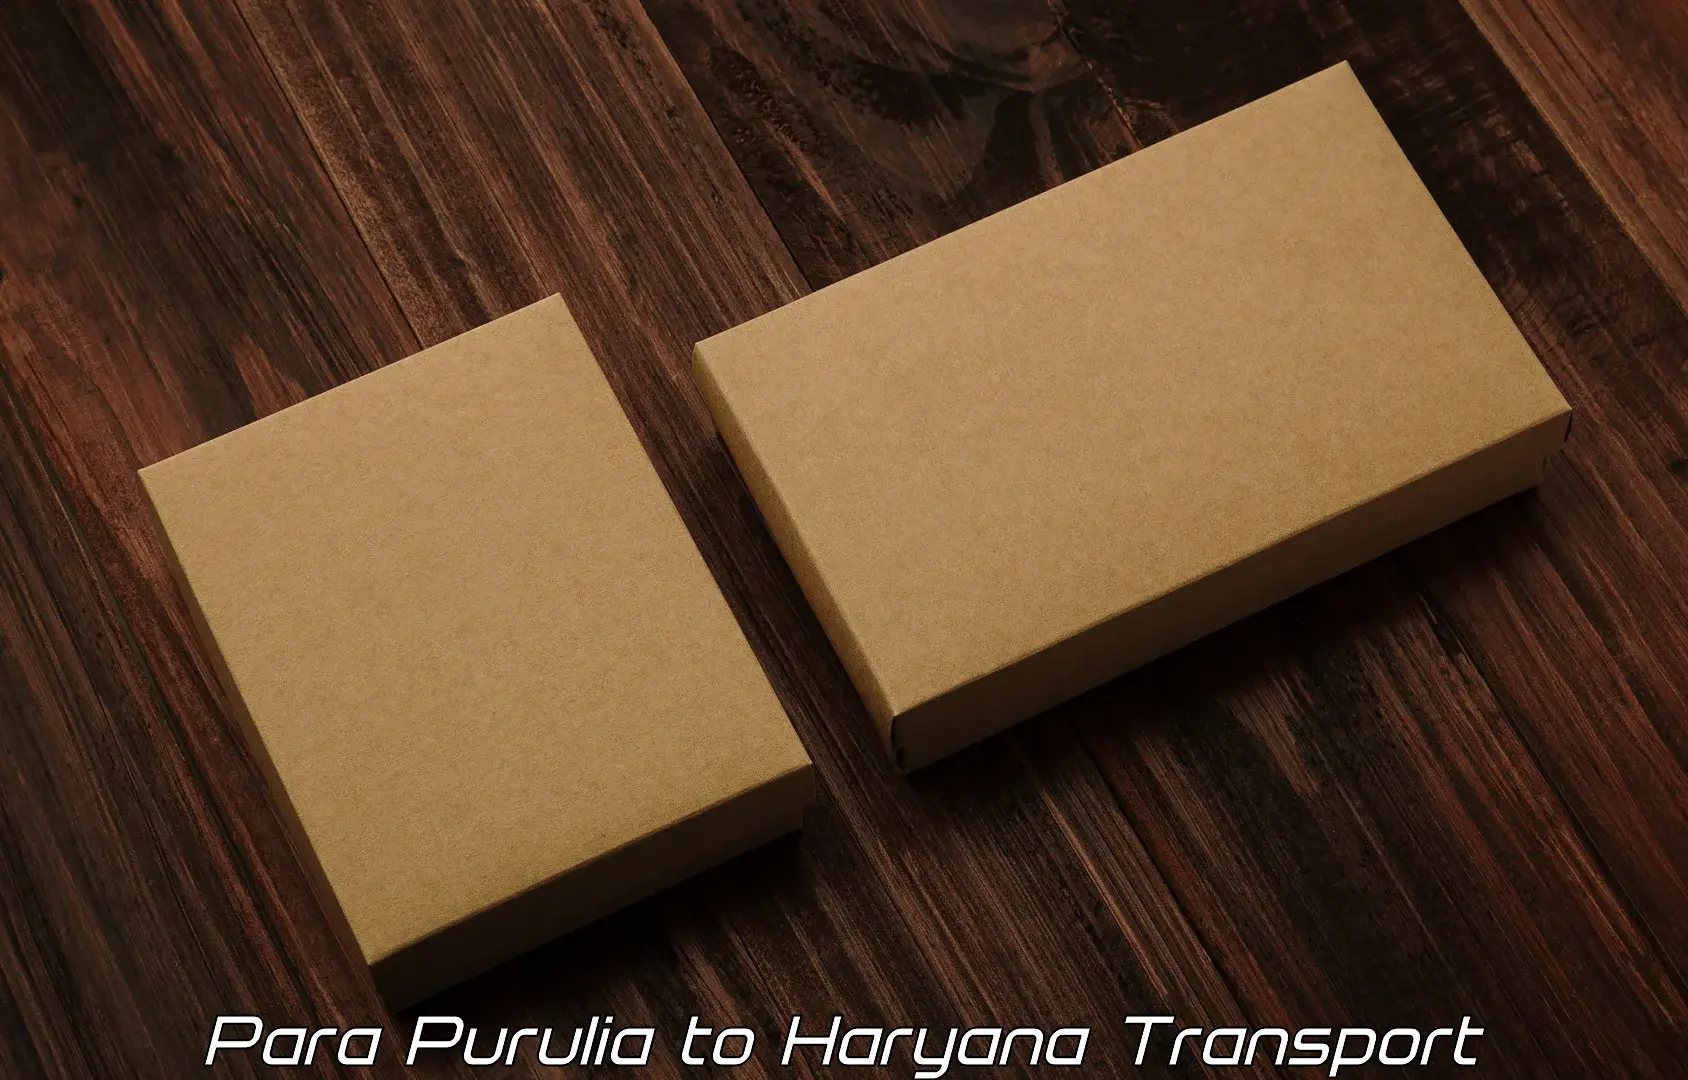 Cargo transport services Para Purulia to Narwana